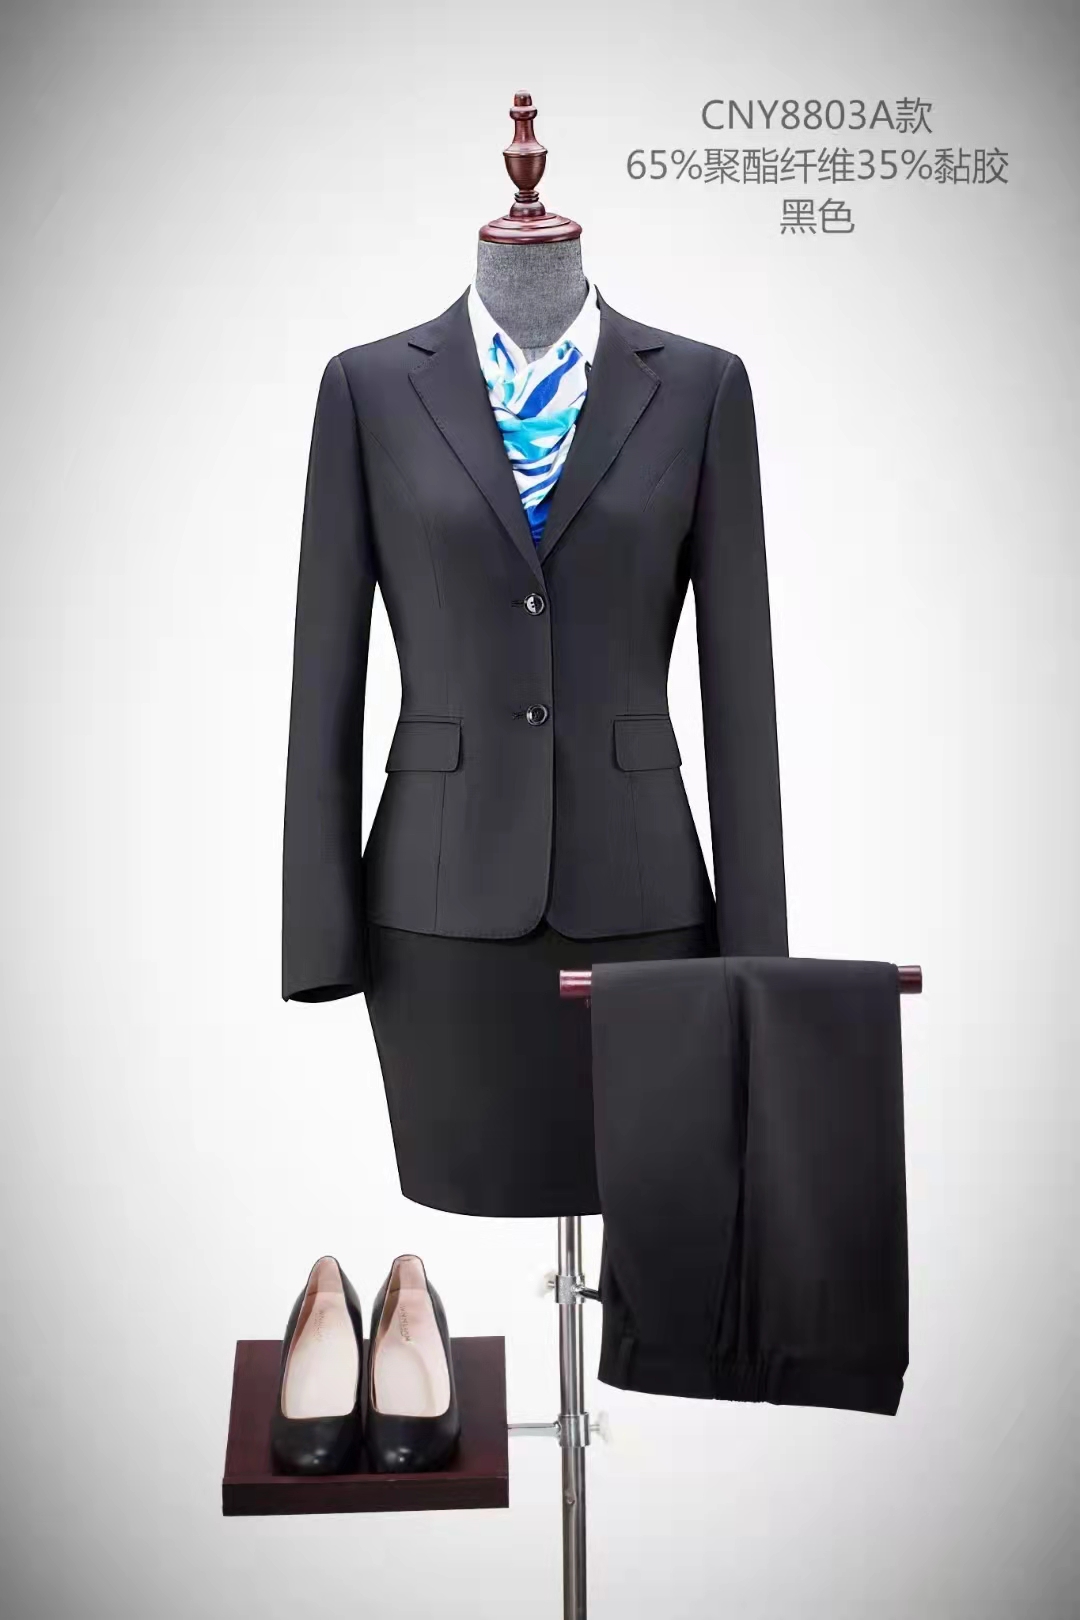 团体定制男女同款商务西装工作服物业4S工装企业办公室制服